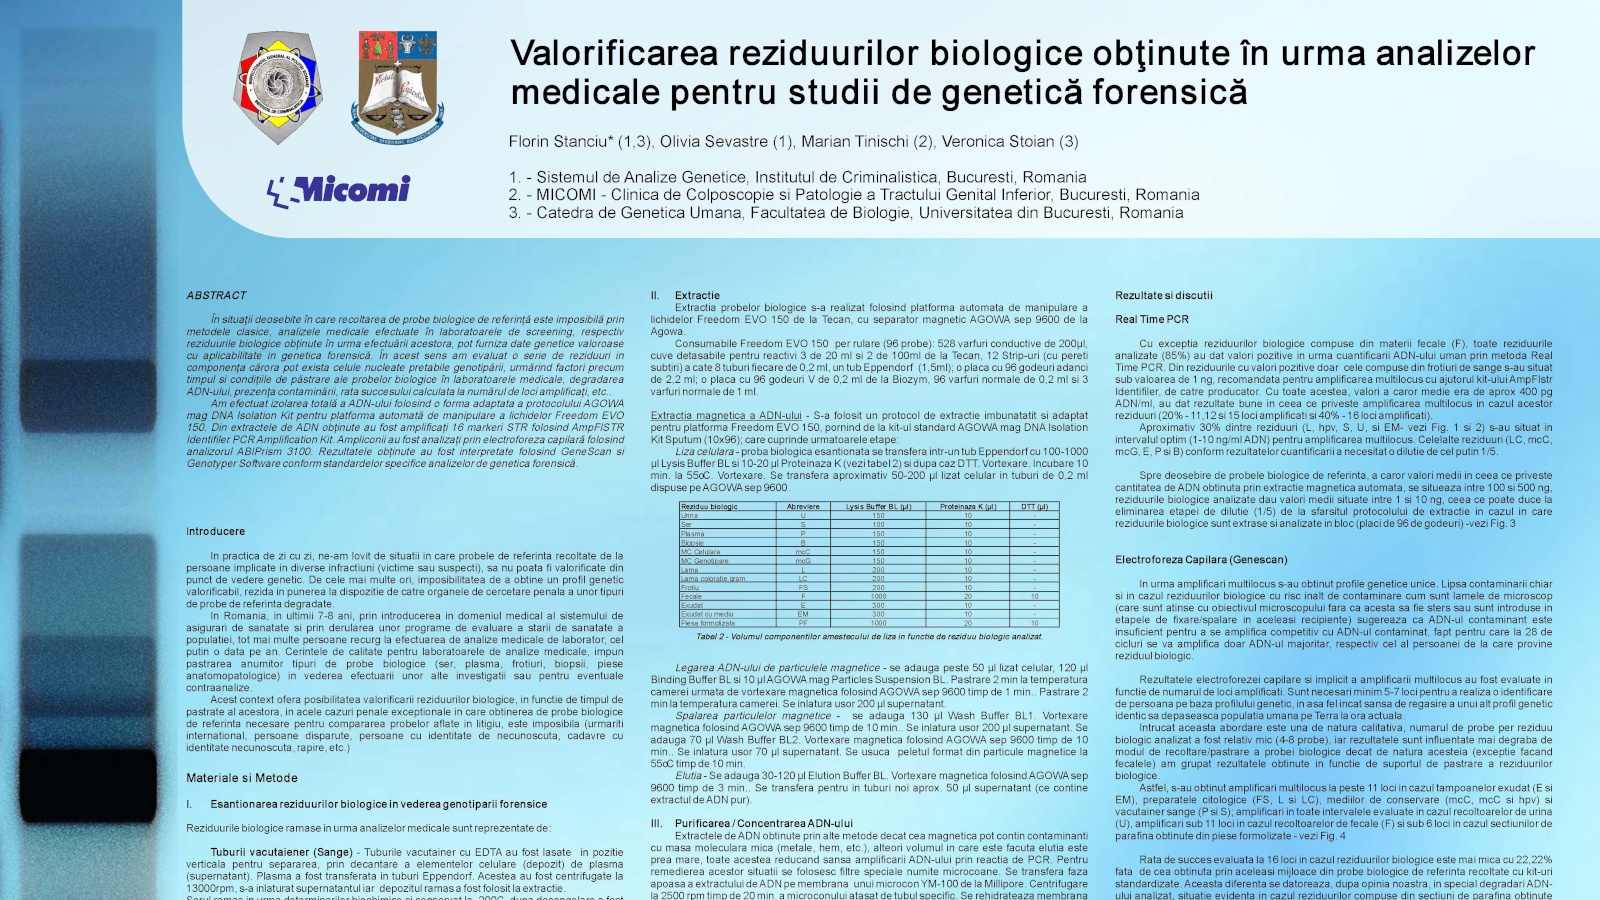 Poster - Valorificarea reziduurilor biologice obtinute în urma analizelor medicale (...)